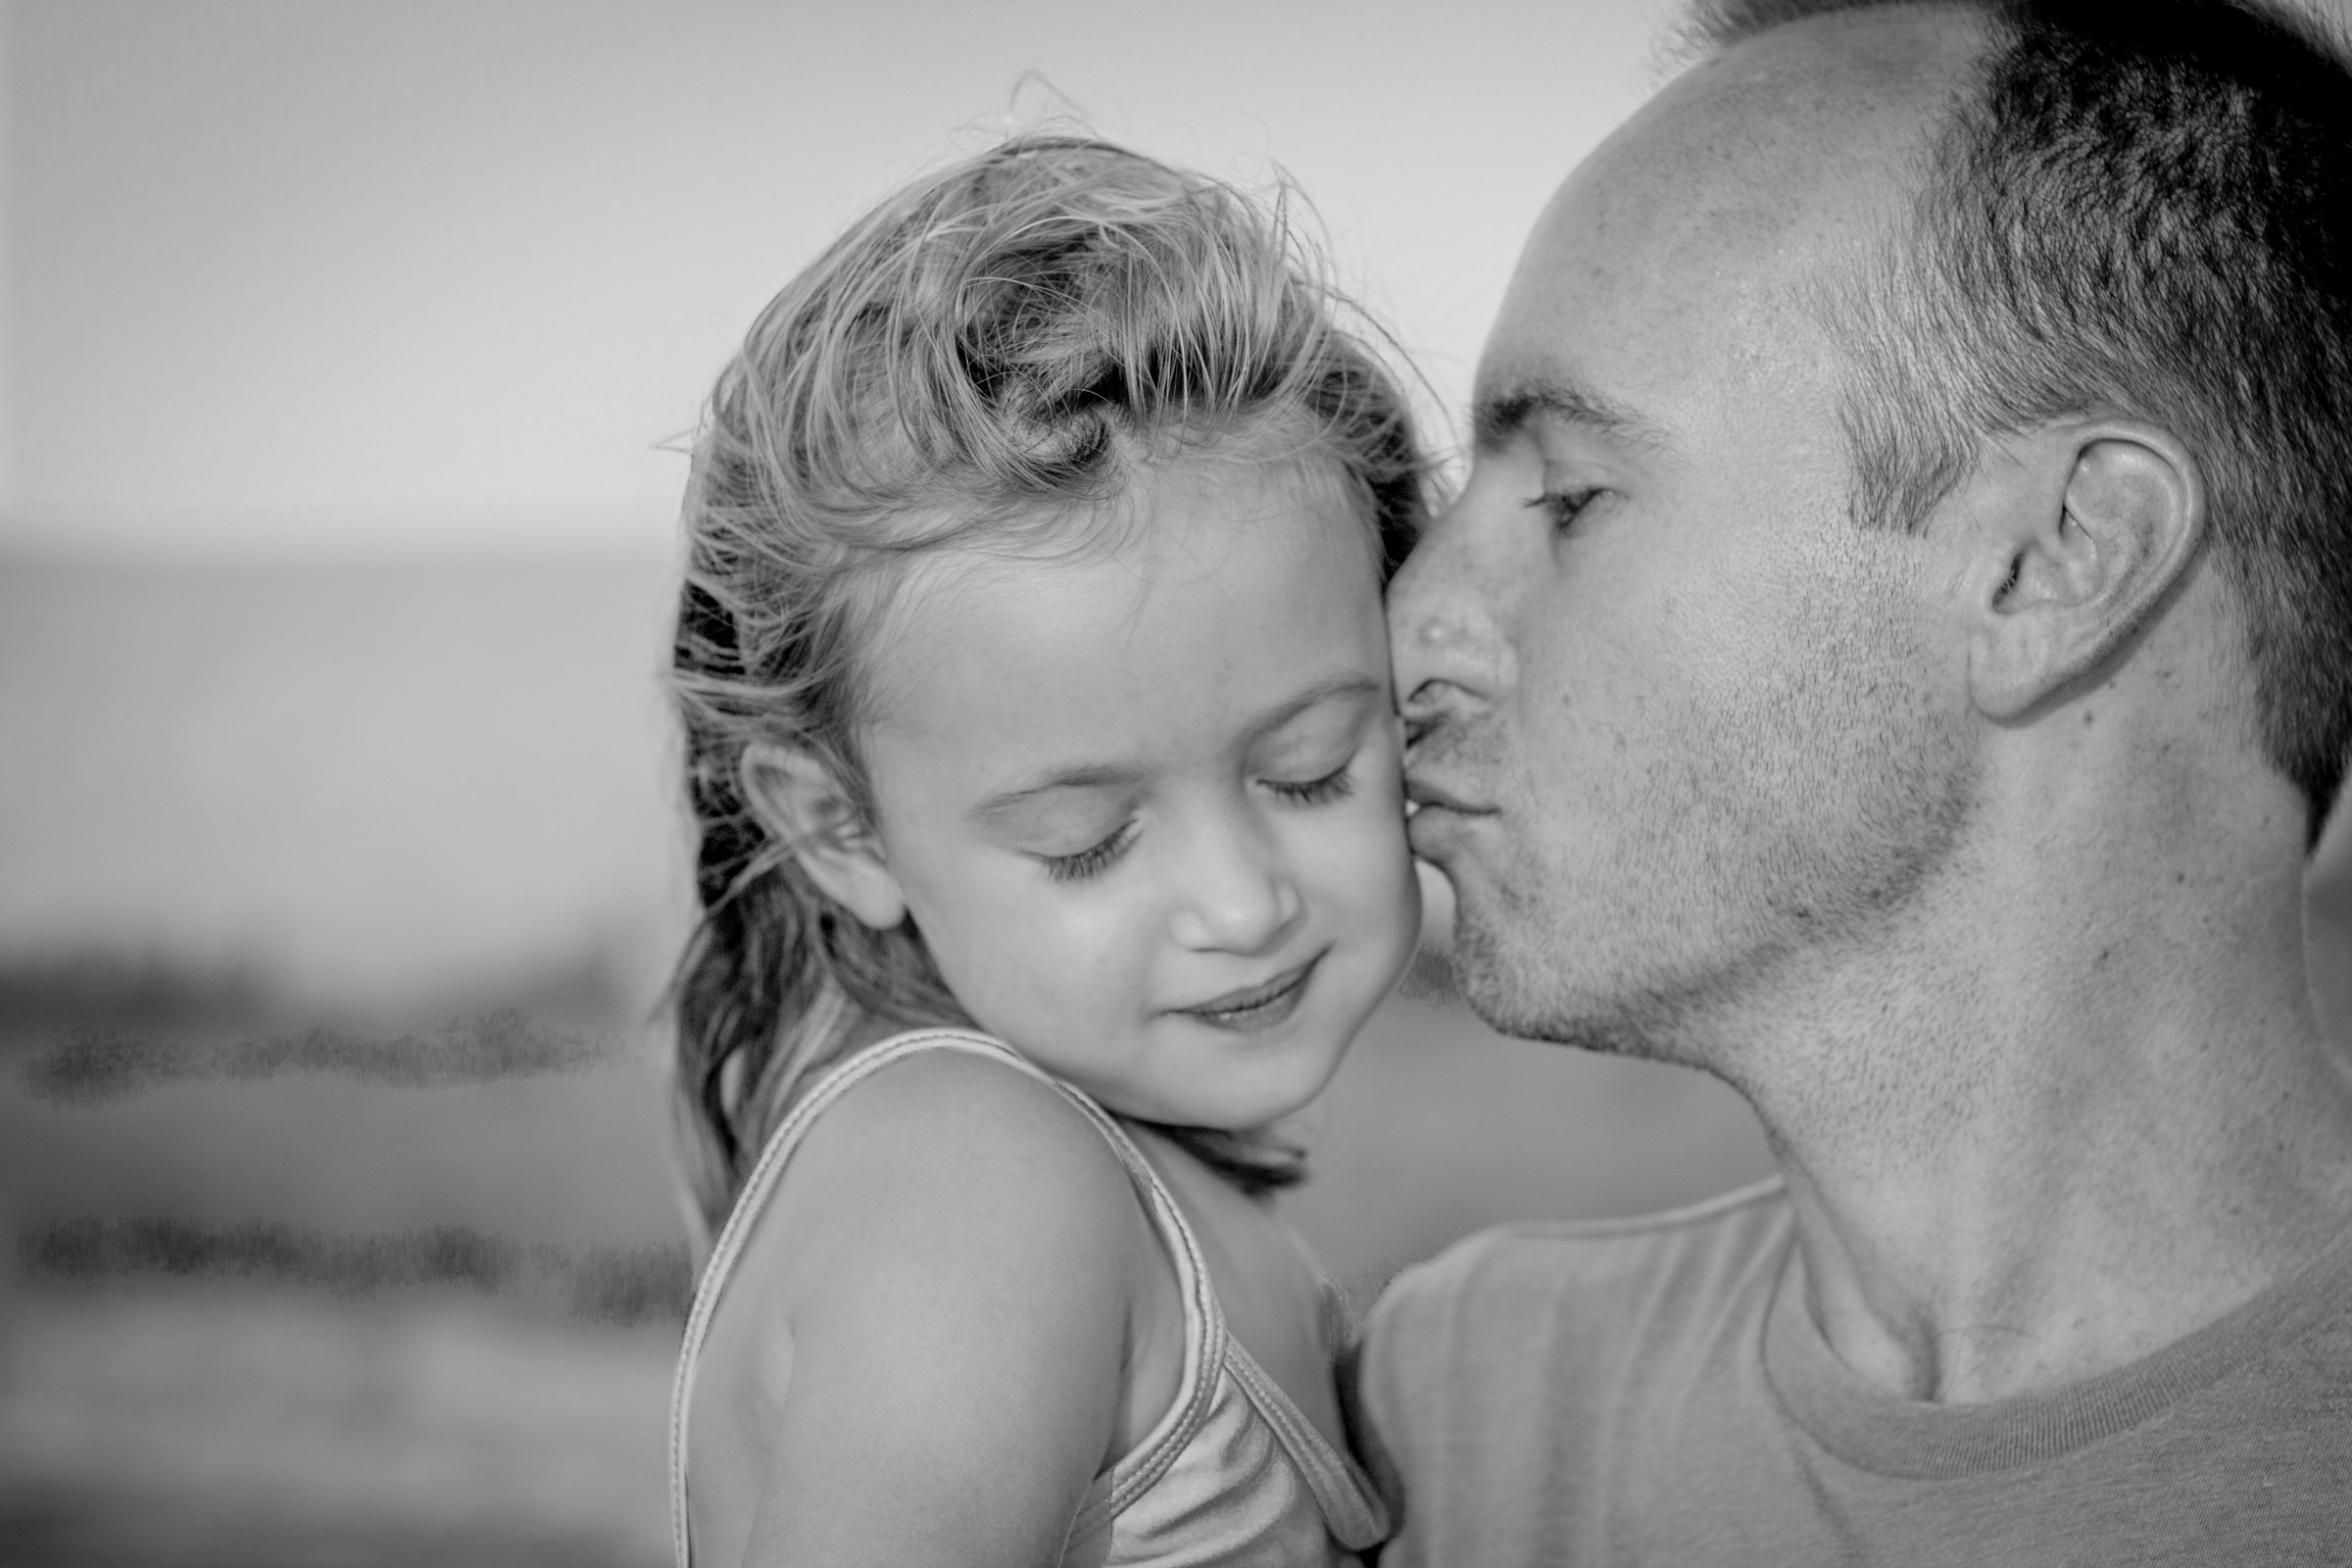 Vater küsst seine Tochter auf die Wange | Quelle: Unsplash